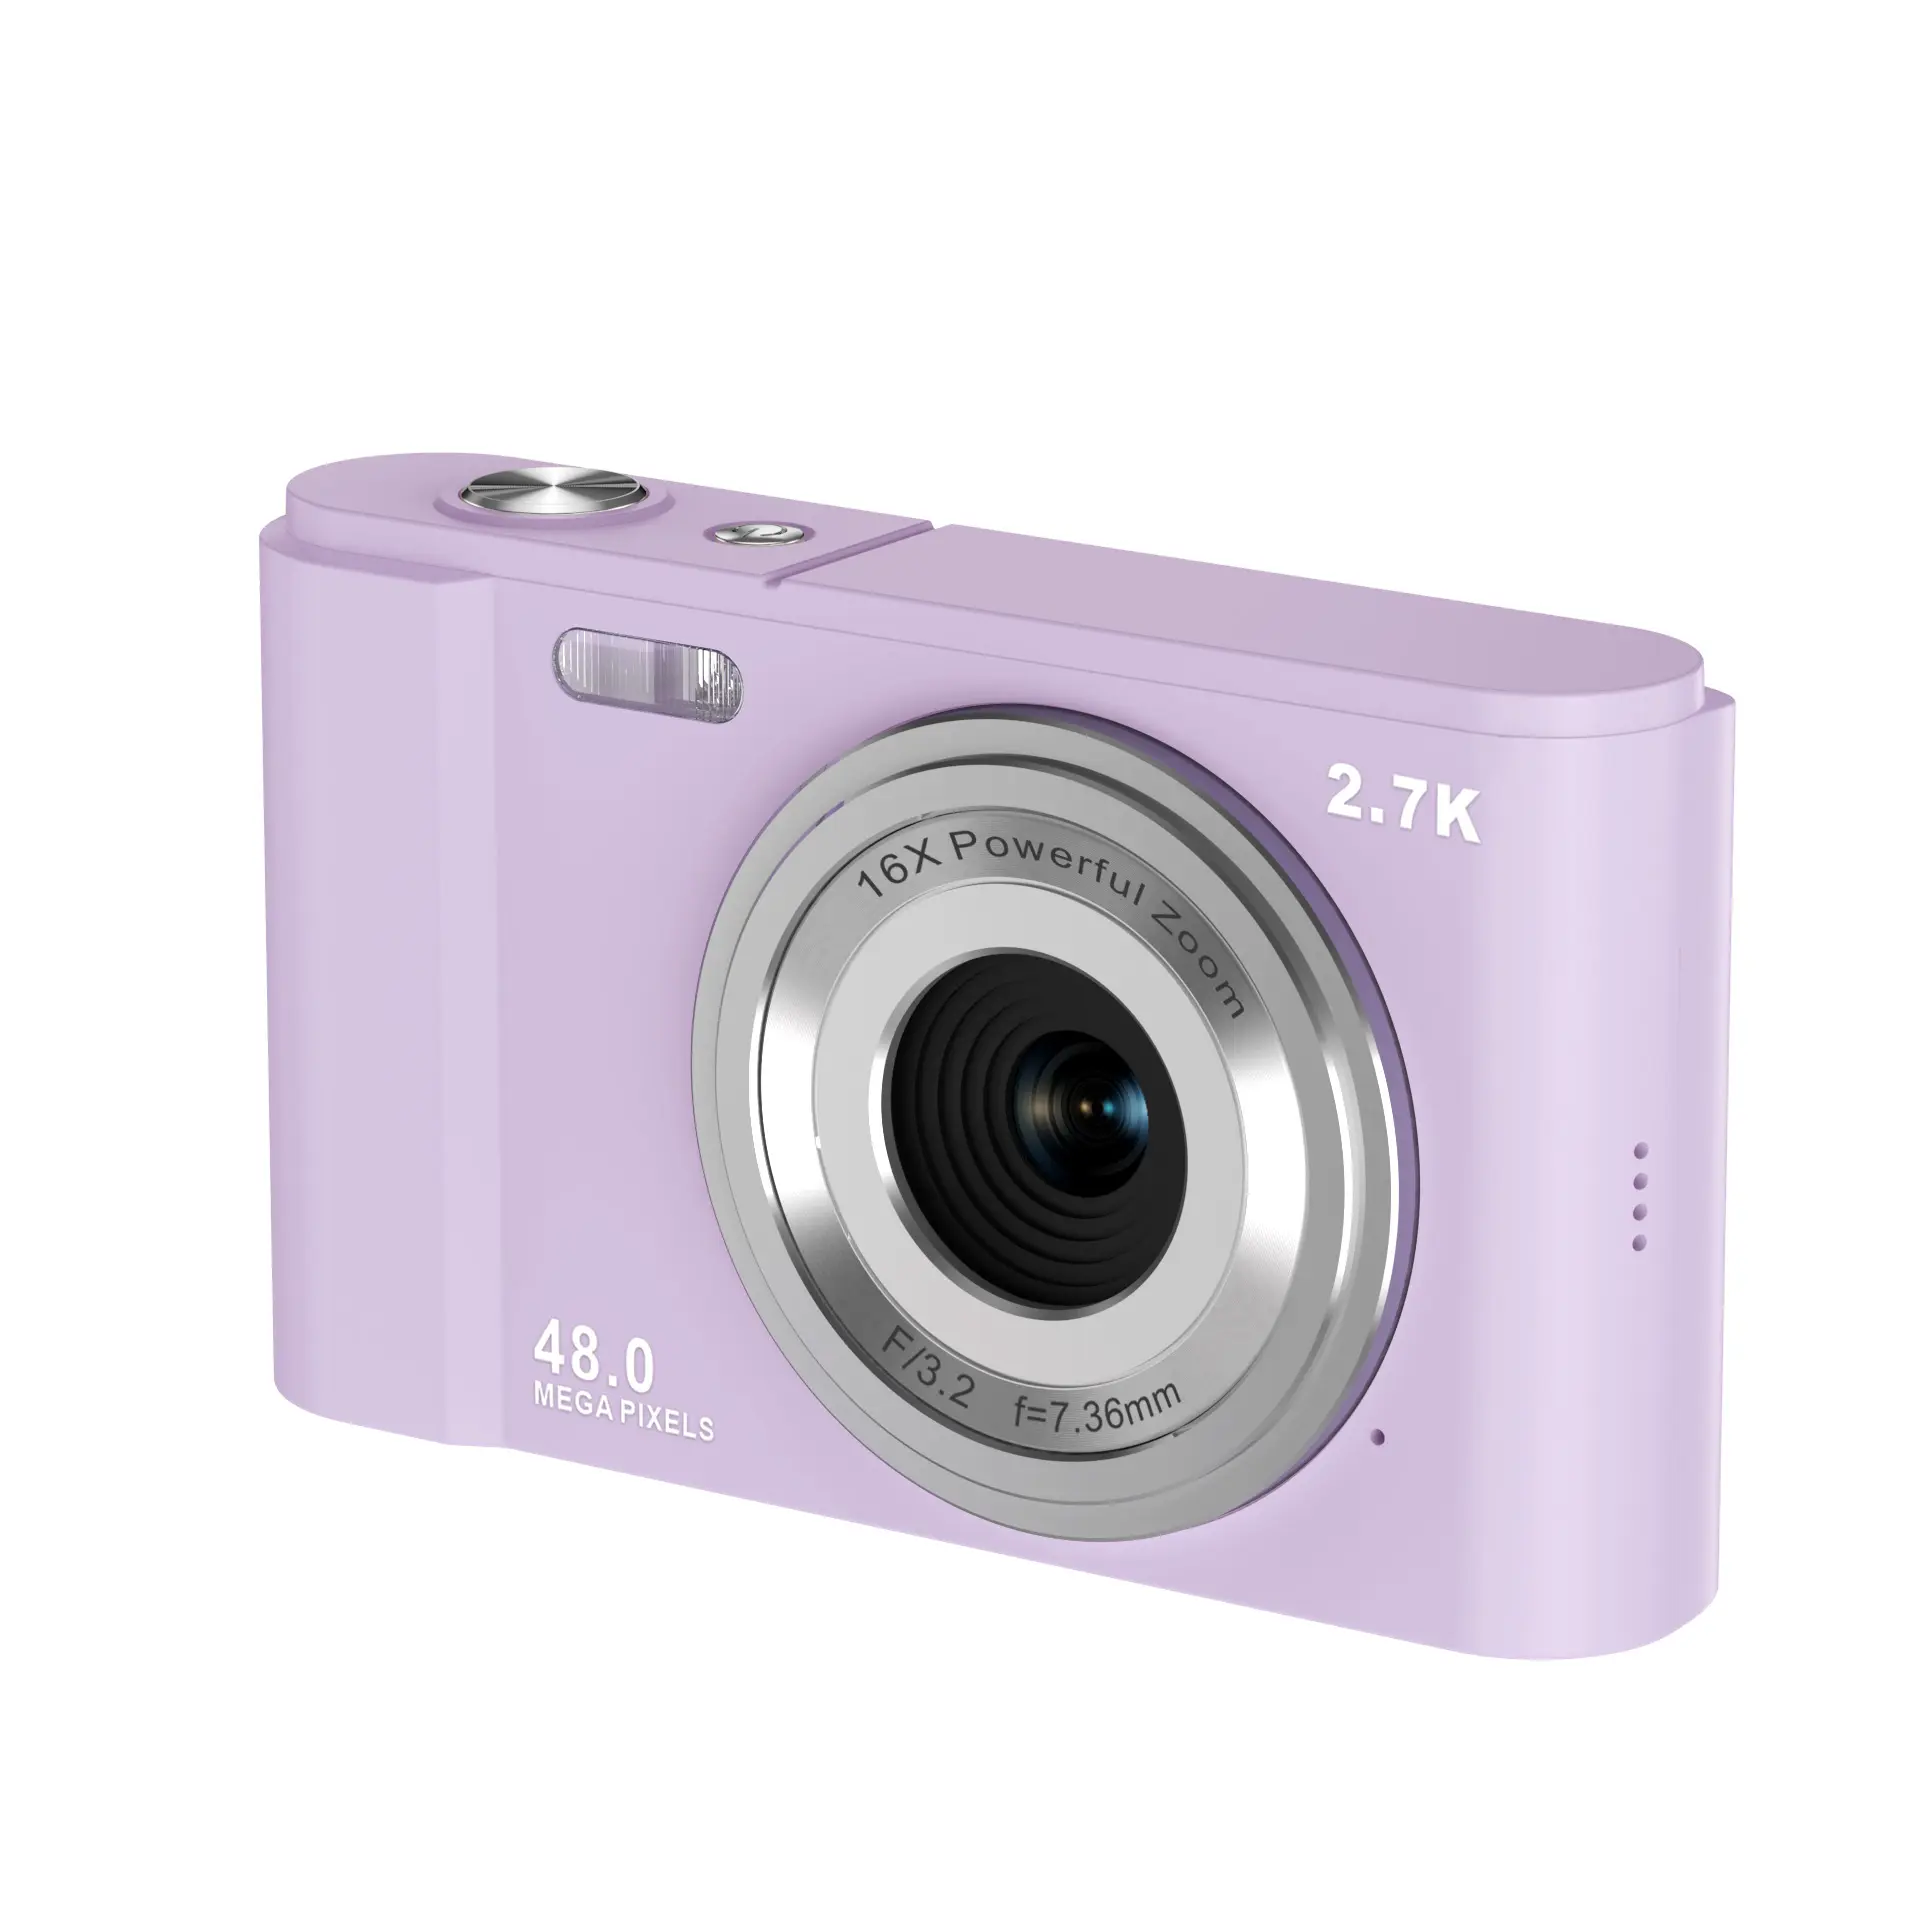 48 Megapixels Camcorder camera 2.7K Full Hd Instant Digital Photo Camera with Smile capture